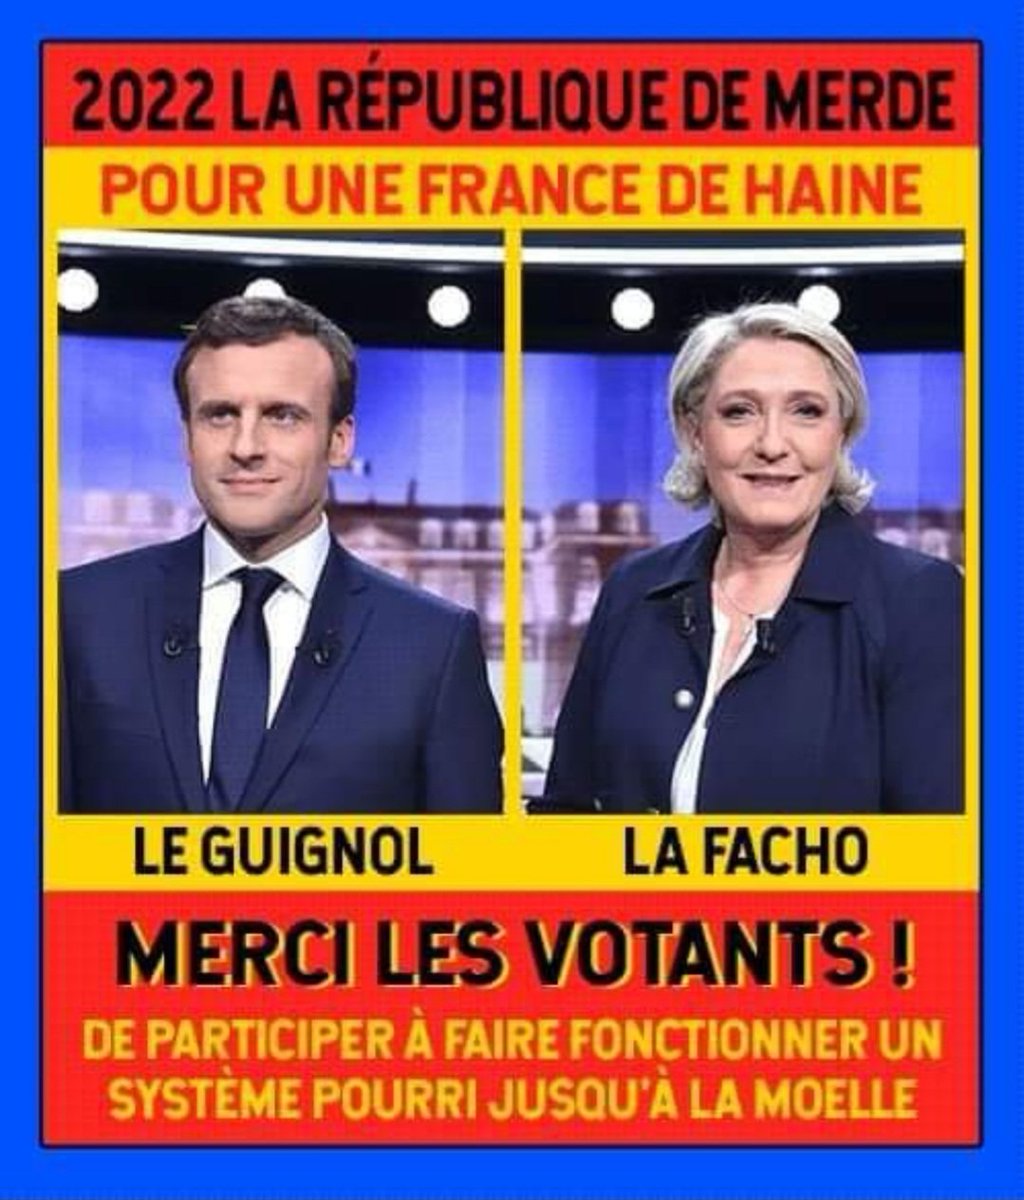 ⚡️ « Si les français étaient vraiment en colère, je n'aurais pas été réélu » assure Emmanuel Macron. #Macron #Macron13h #reformedeseetraites #manif23mars #greve23mars #Inflation #Manifestations #GiletJaunes #blocagetotal #MacronDemission